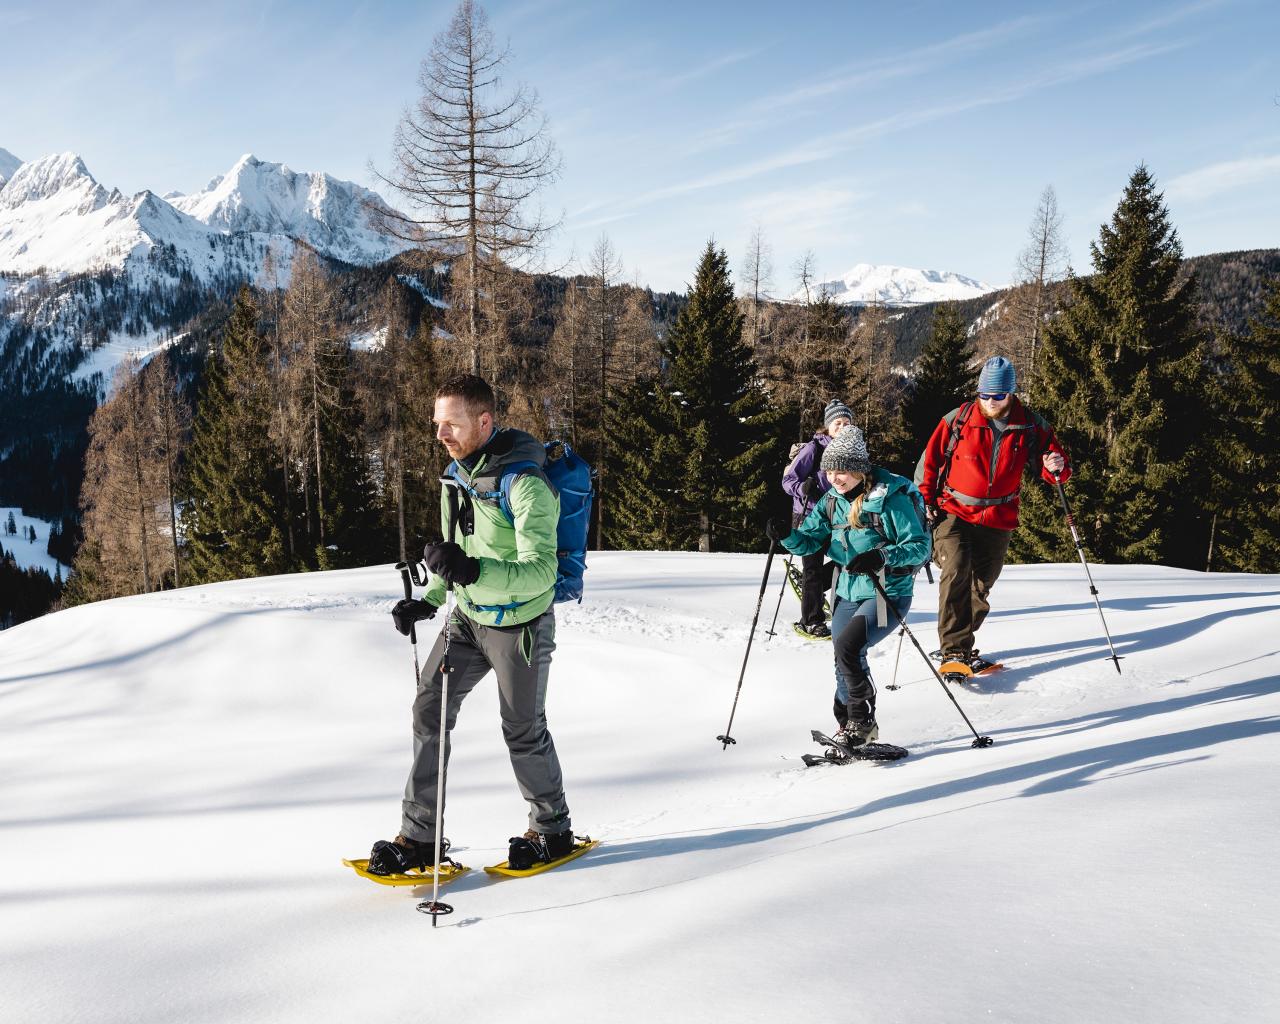 Strážce národního parku doprovází tři dospělé na túře na sněžnicích